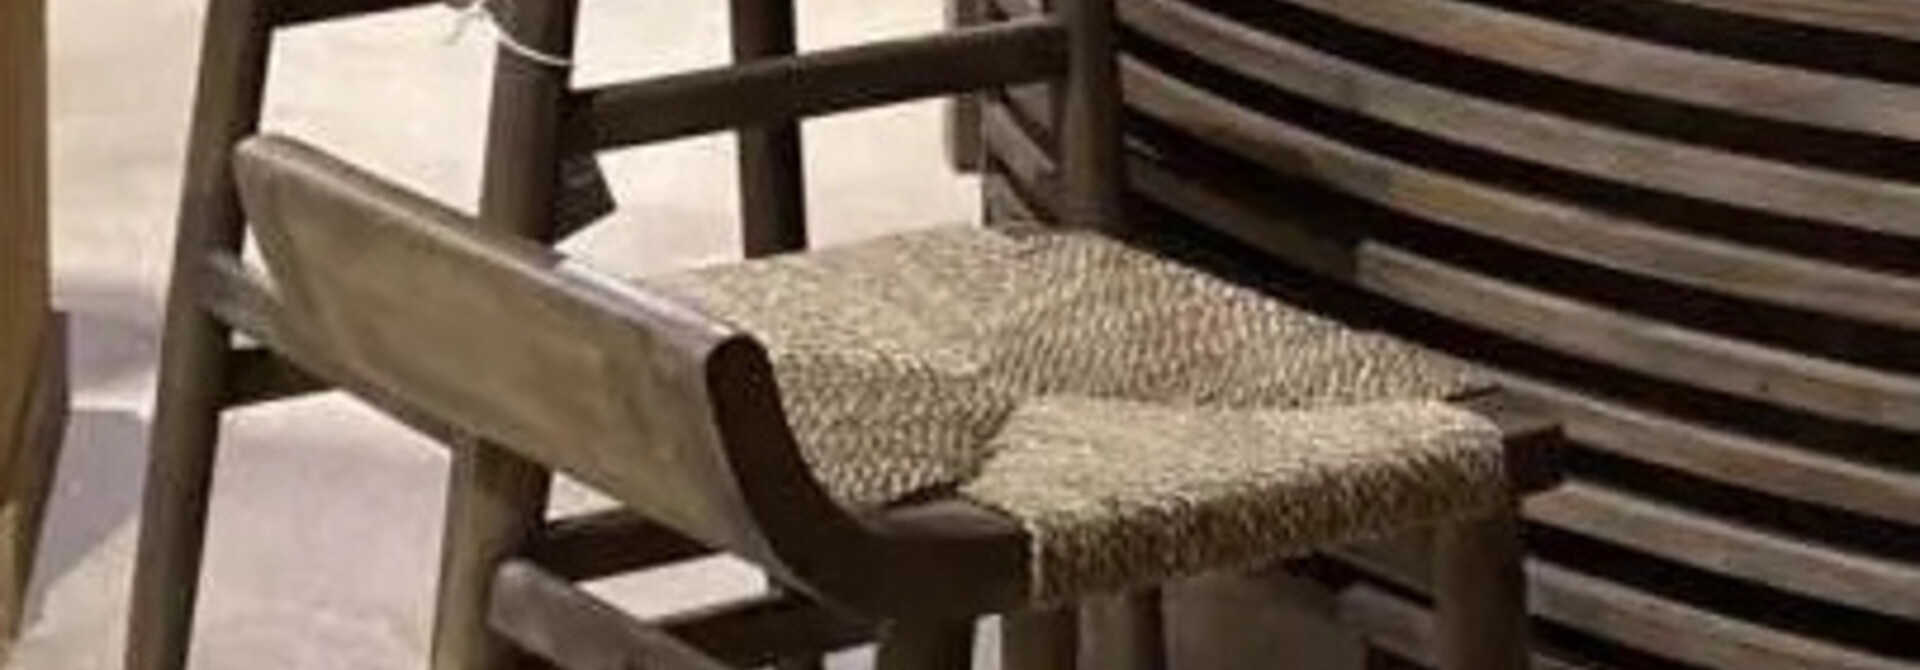 HOFFZ Wooden stool Bintu